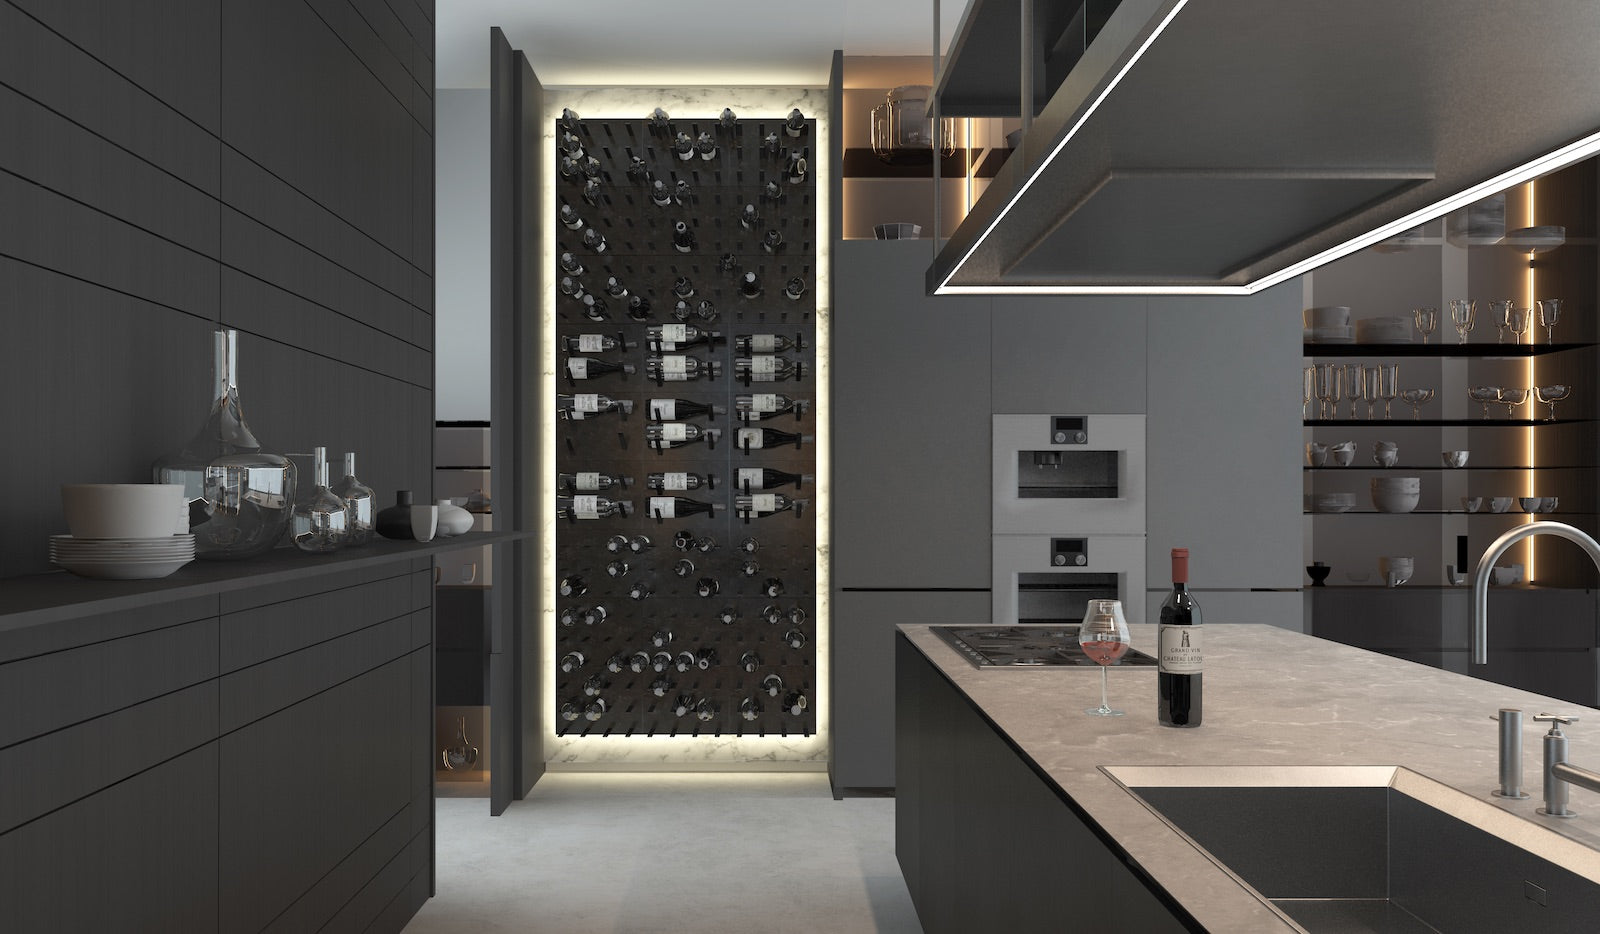 poliform kitchen wine cellar design